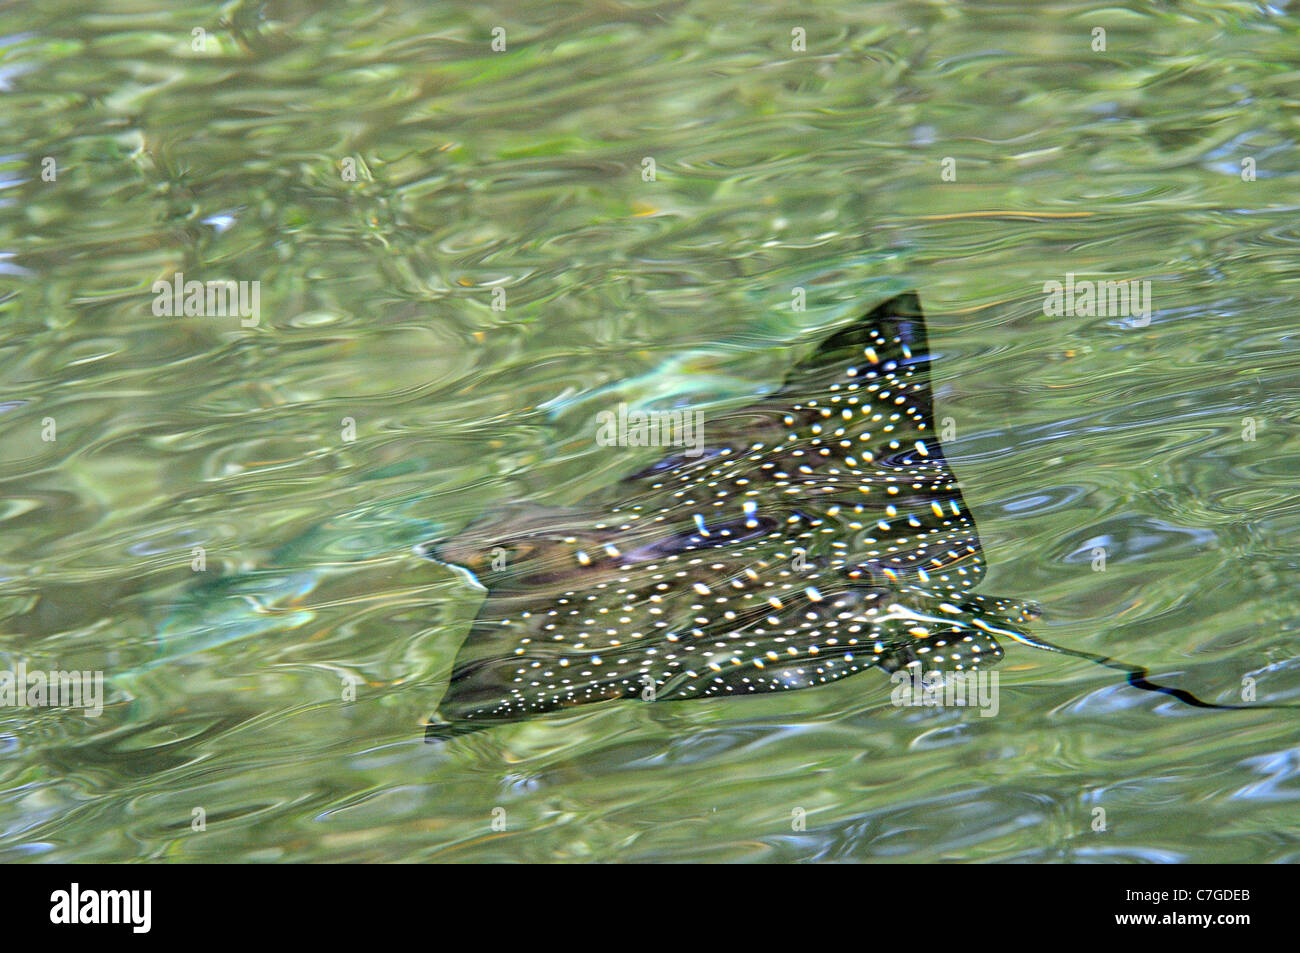 Spotted Eagle Ray (Aetobatus narinari) swimming just below water surface, Galapagos Islands, Ecuador Stock Photo